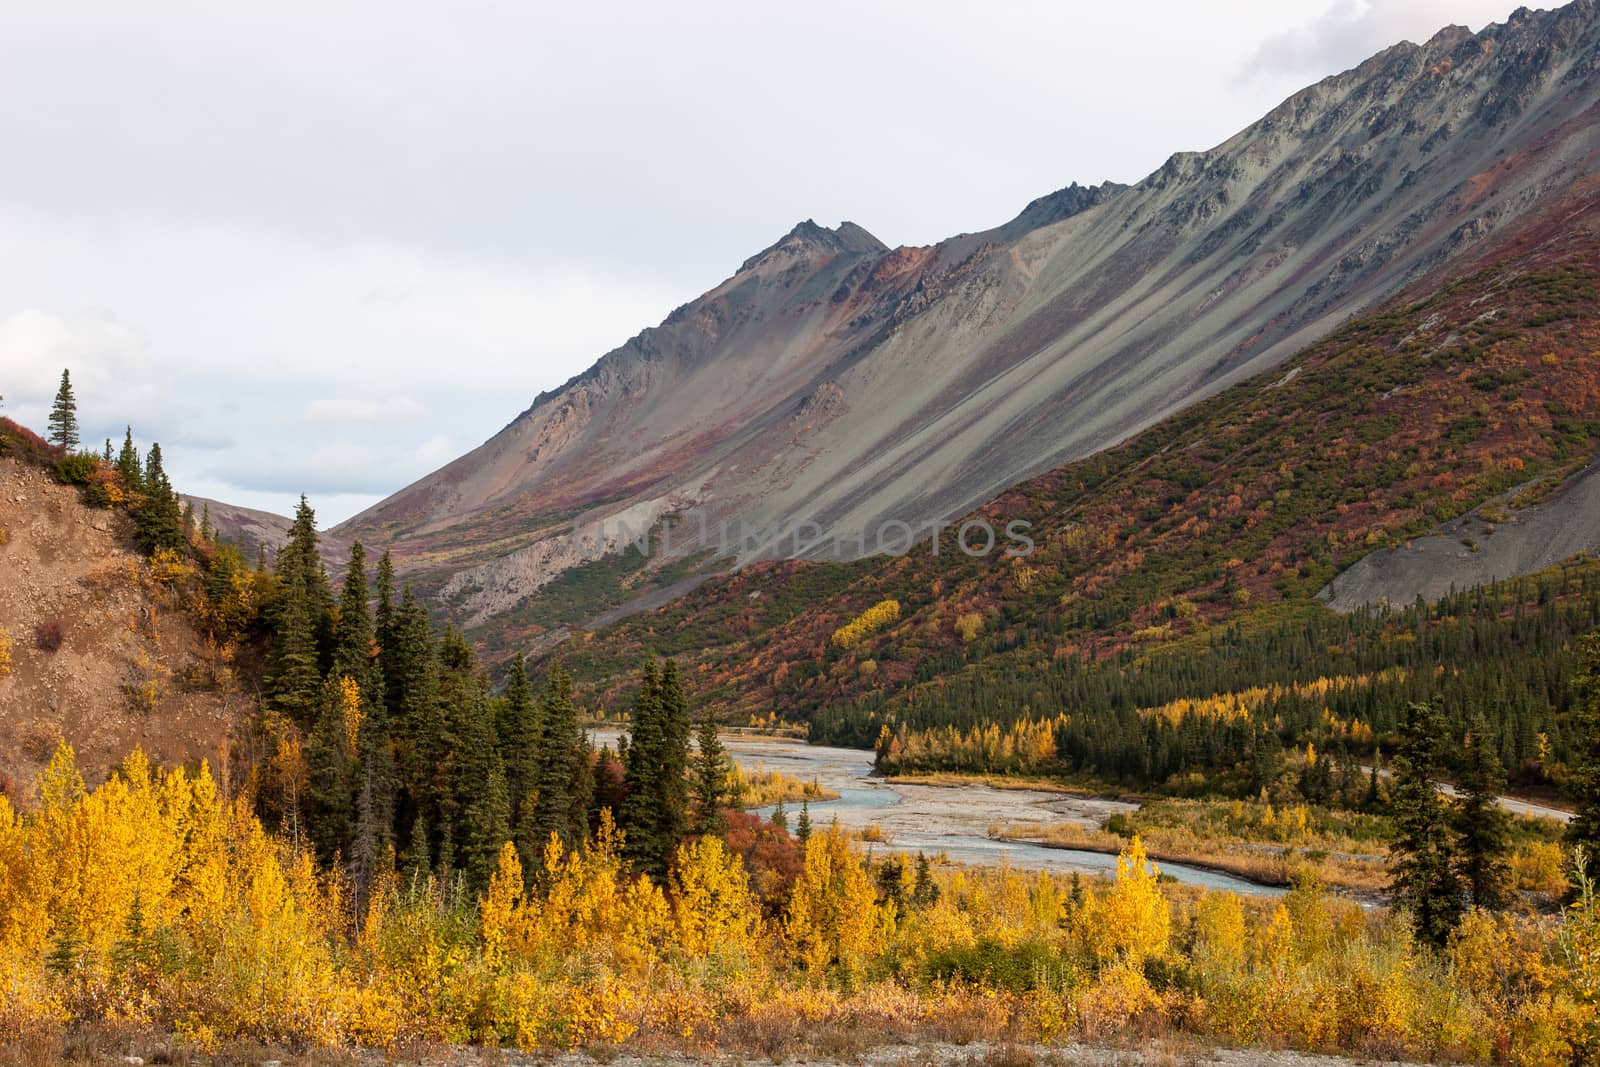 A small river winds through rugged Alaska wilderness